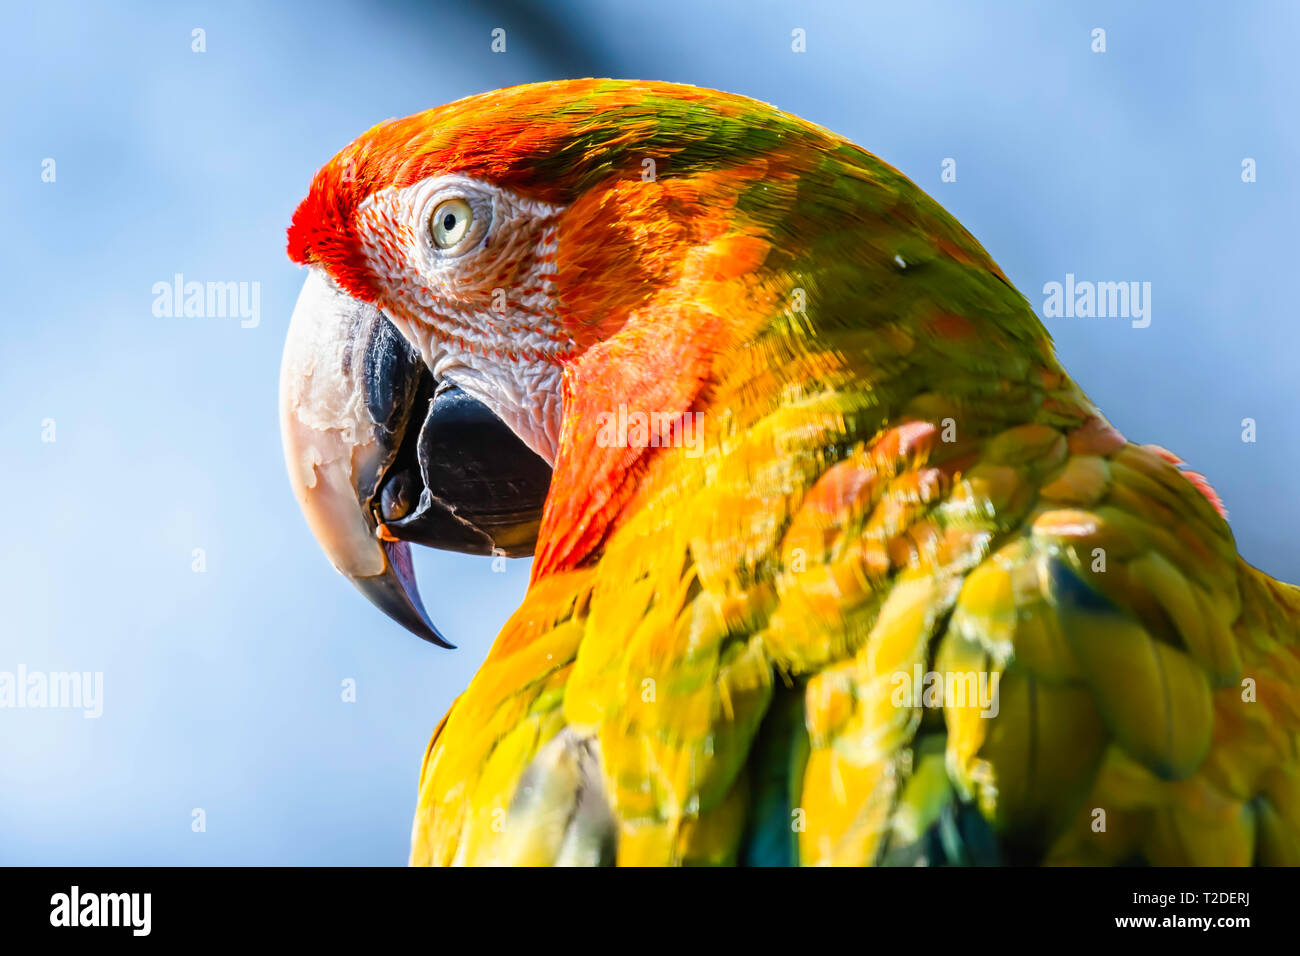 Close Up retrato de guacamaya roja loro .animal divertido.majestuoso y coloridas aves tropicales grandes, populares pet.Wildlife Photography.cabeza de animal. Foto de stock